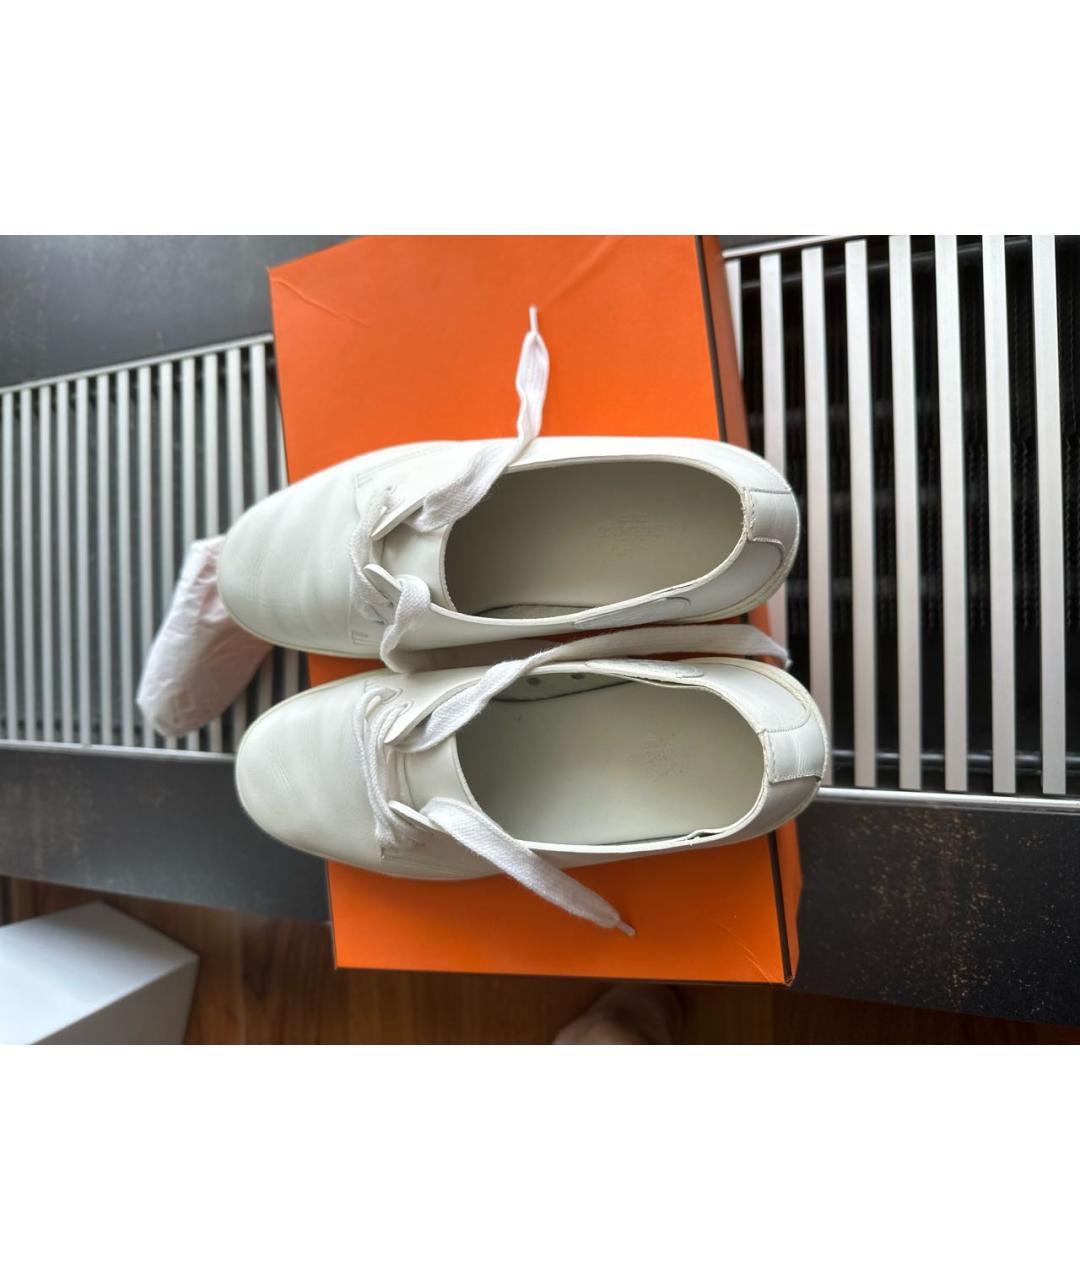 HERMES PRE-OWNED Белые кожаные ботинки, фото 3